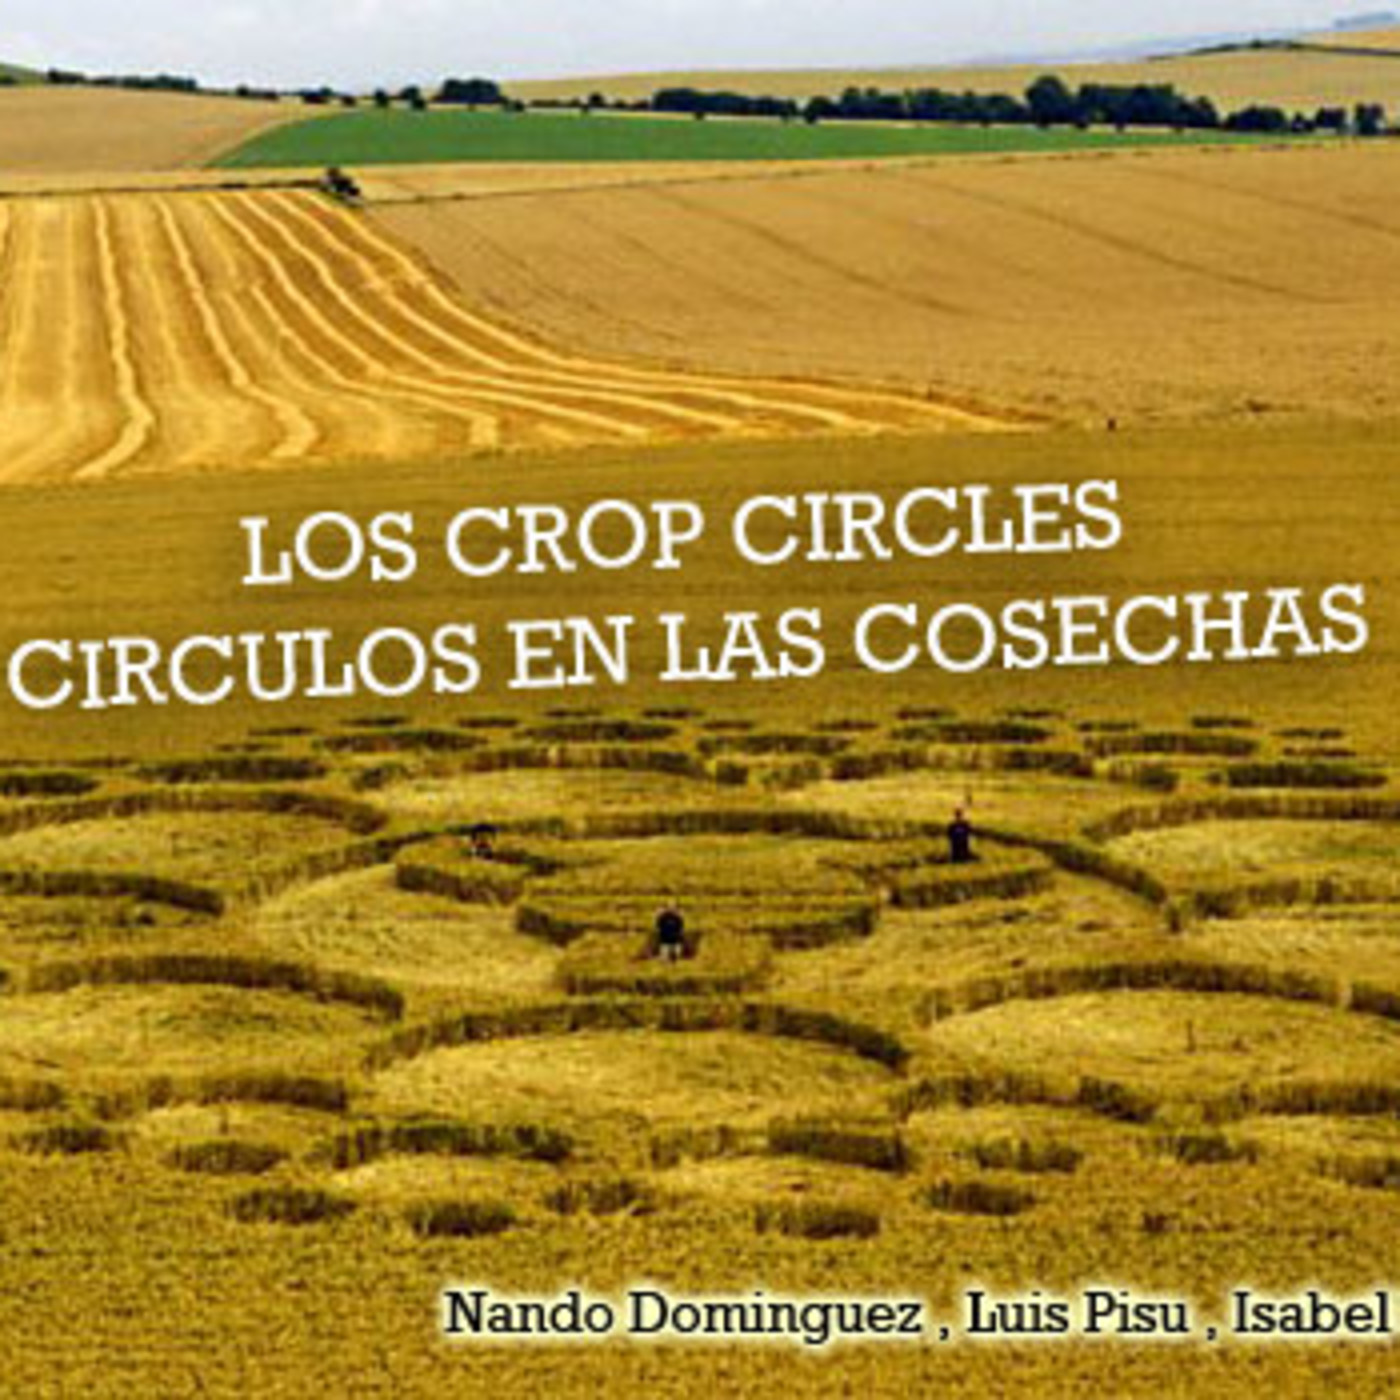 La Puerta al Misterio - Los Crop Circles una aproximación a la realidad